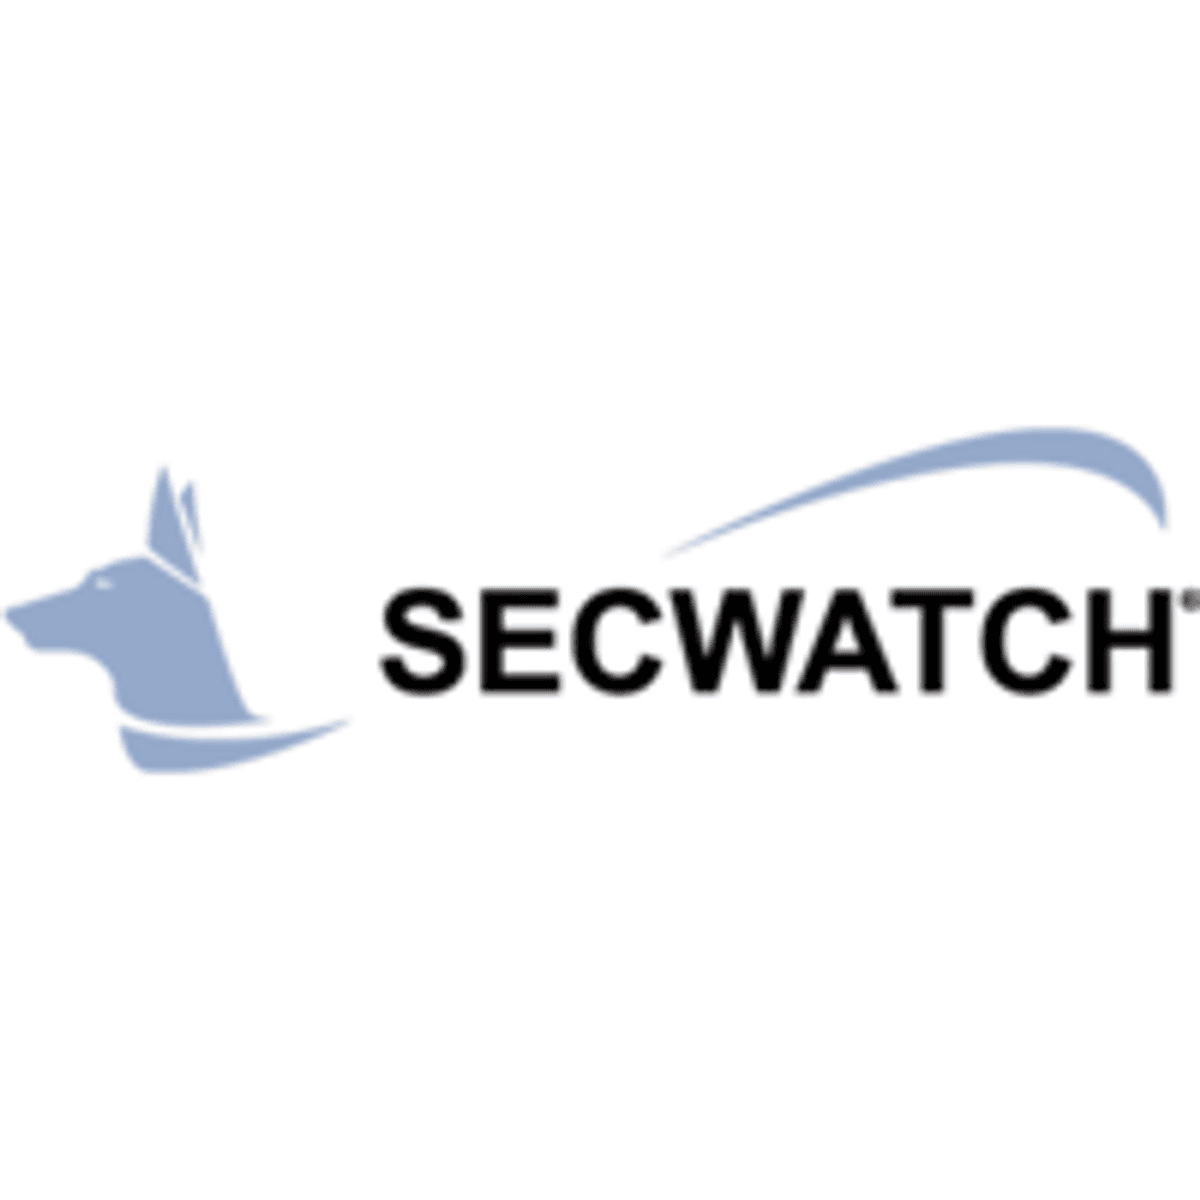 SECWATCH en ESET bieden samen enterprise security toepassingen image